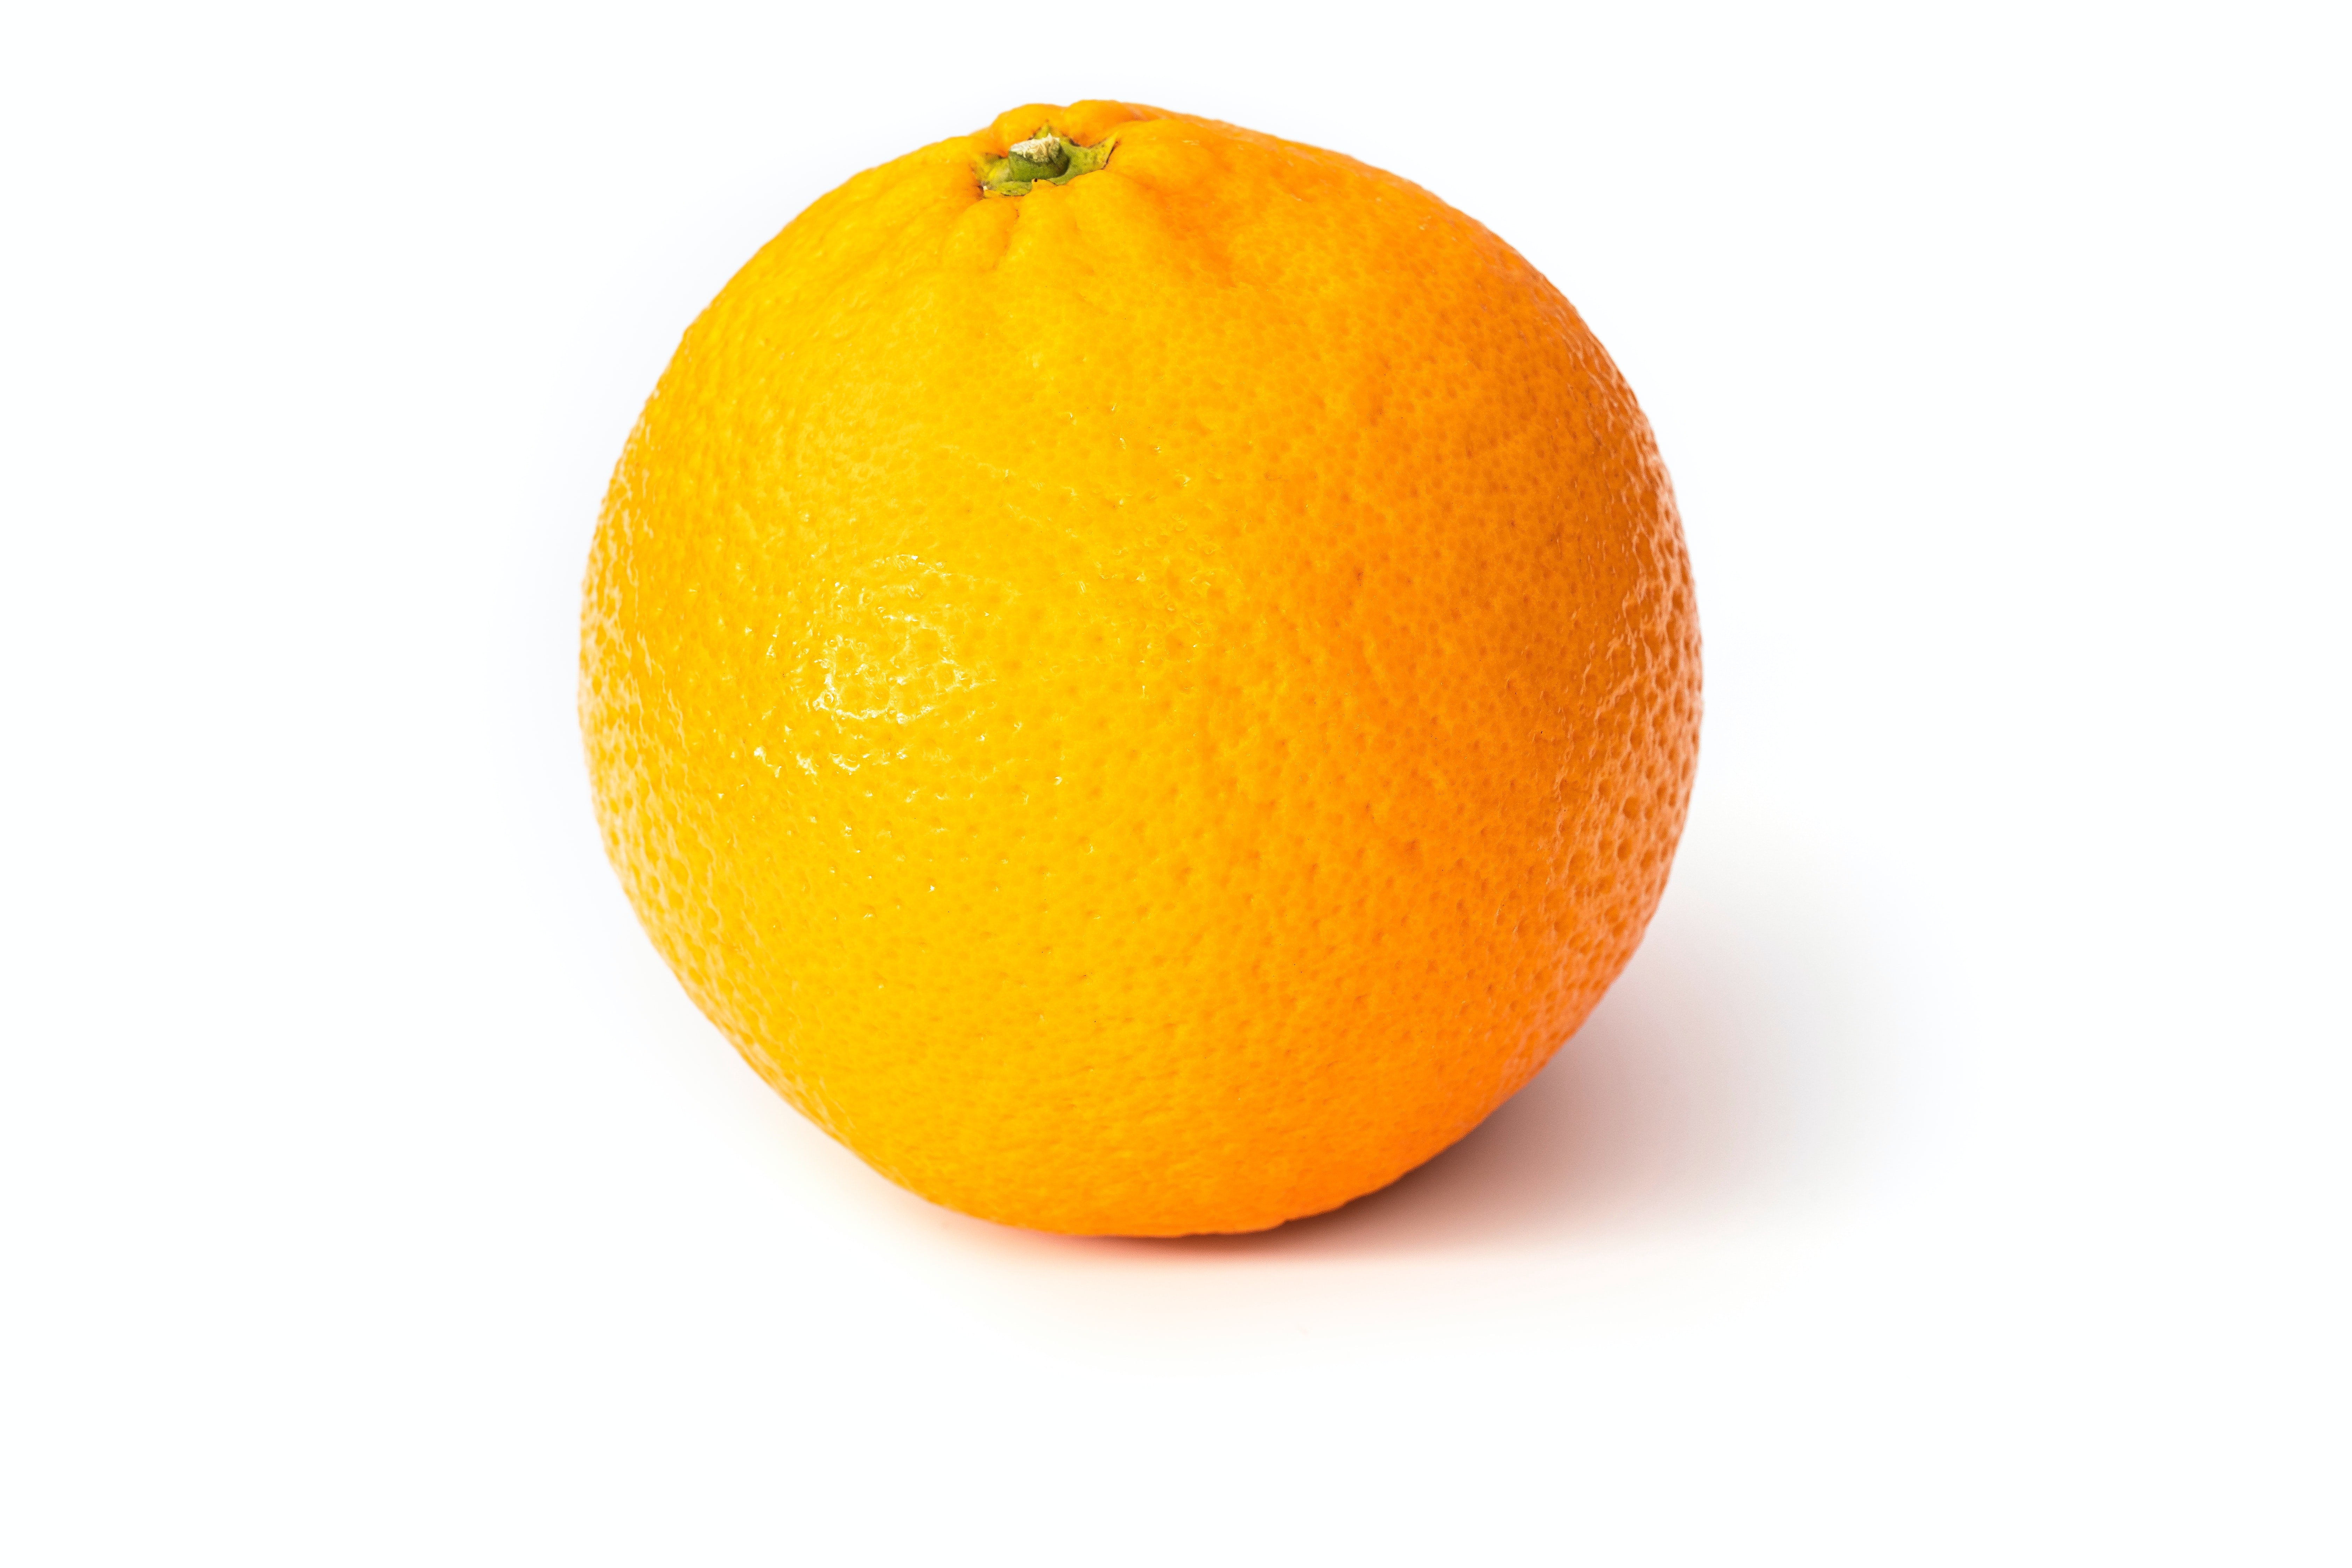 فاكهة البرتقال (وسائل التواصل)